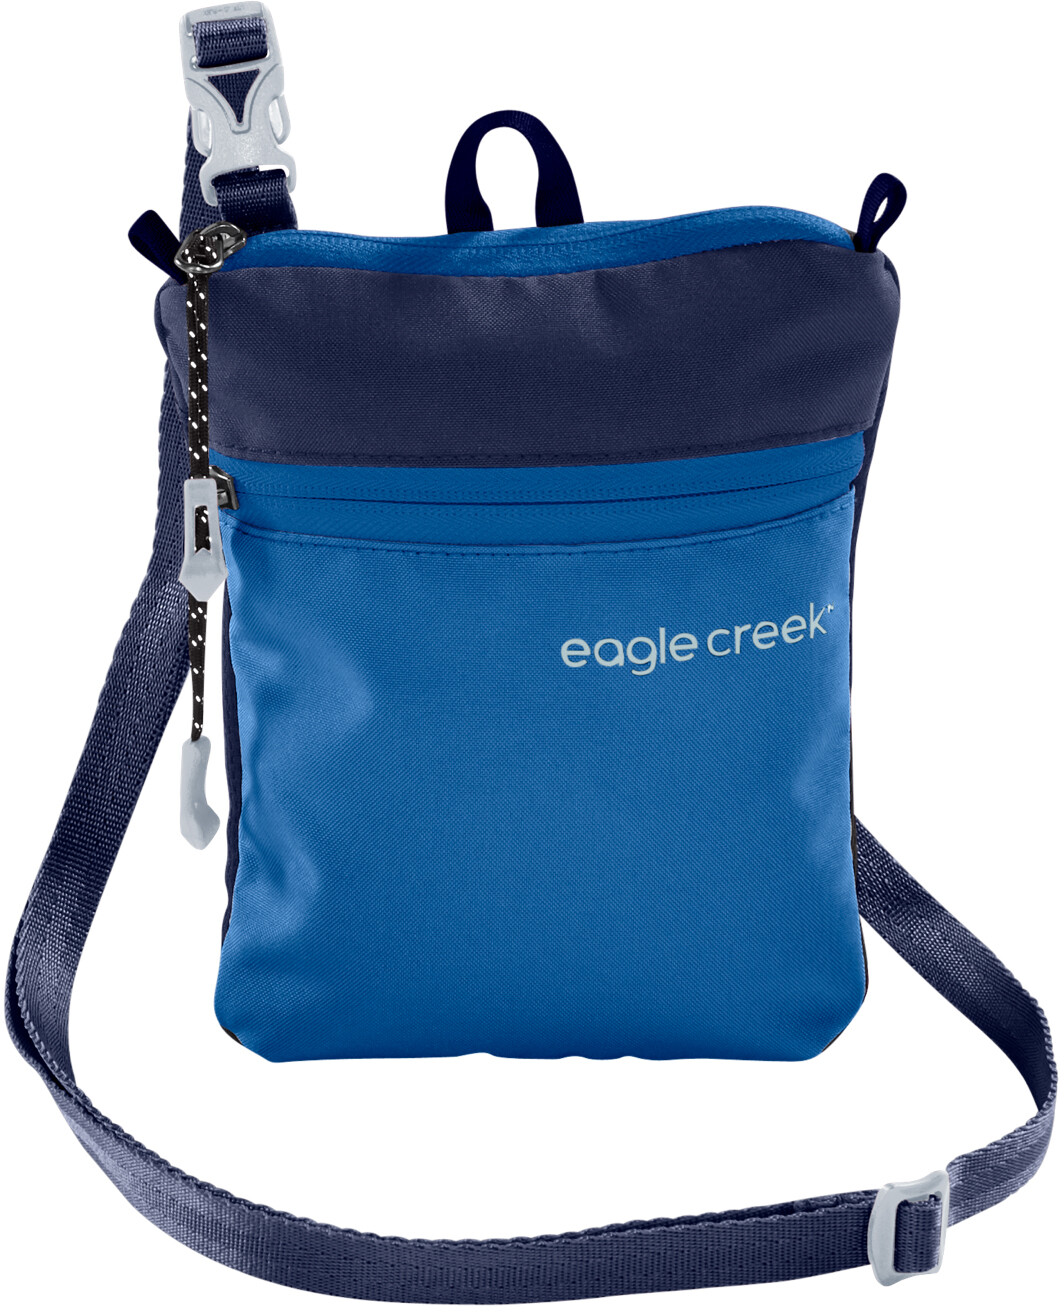 Eagle Creek Stash Brustbeutel blau